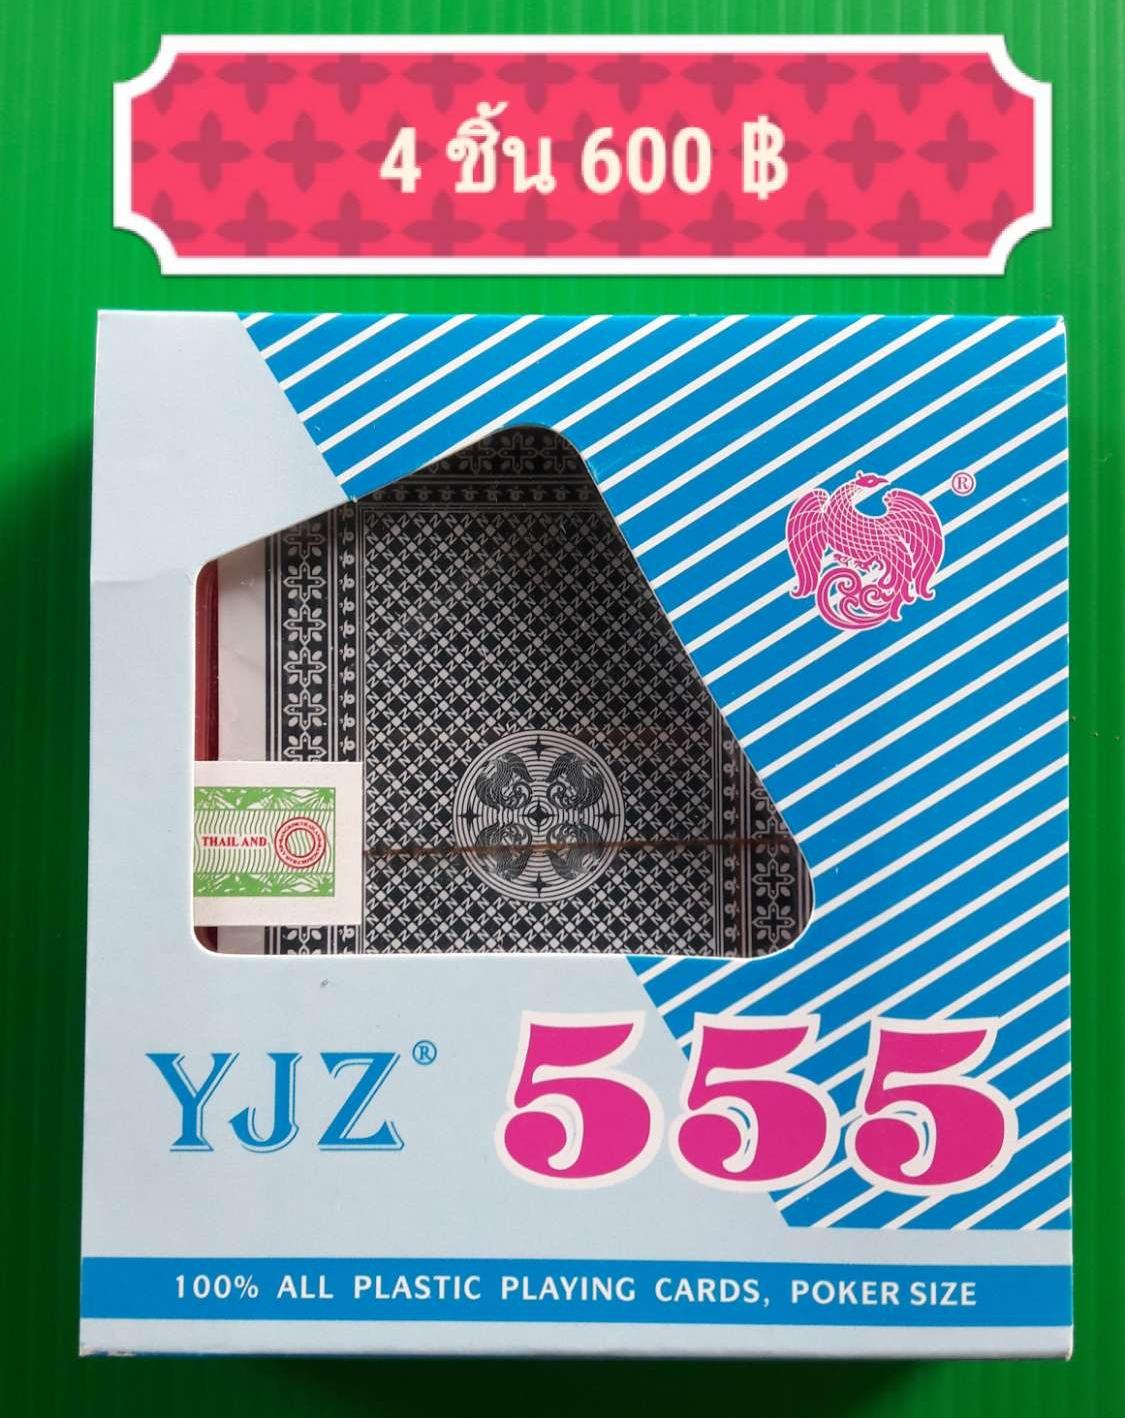 ไพ่ ตอง YJZ 555 x4 ชิ้น พลาสติก ขอบทอง (ไพ่ตอง)